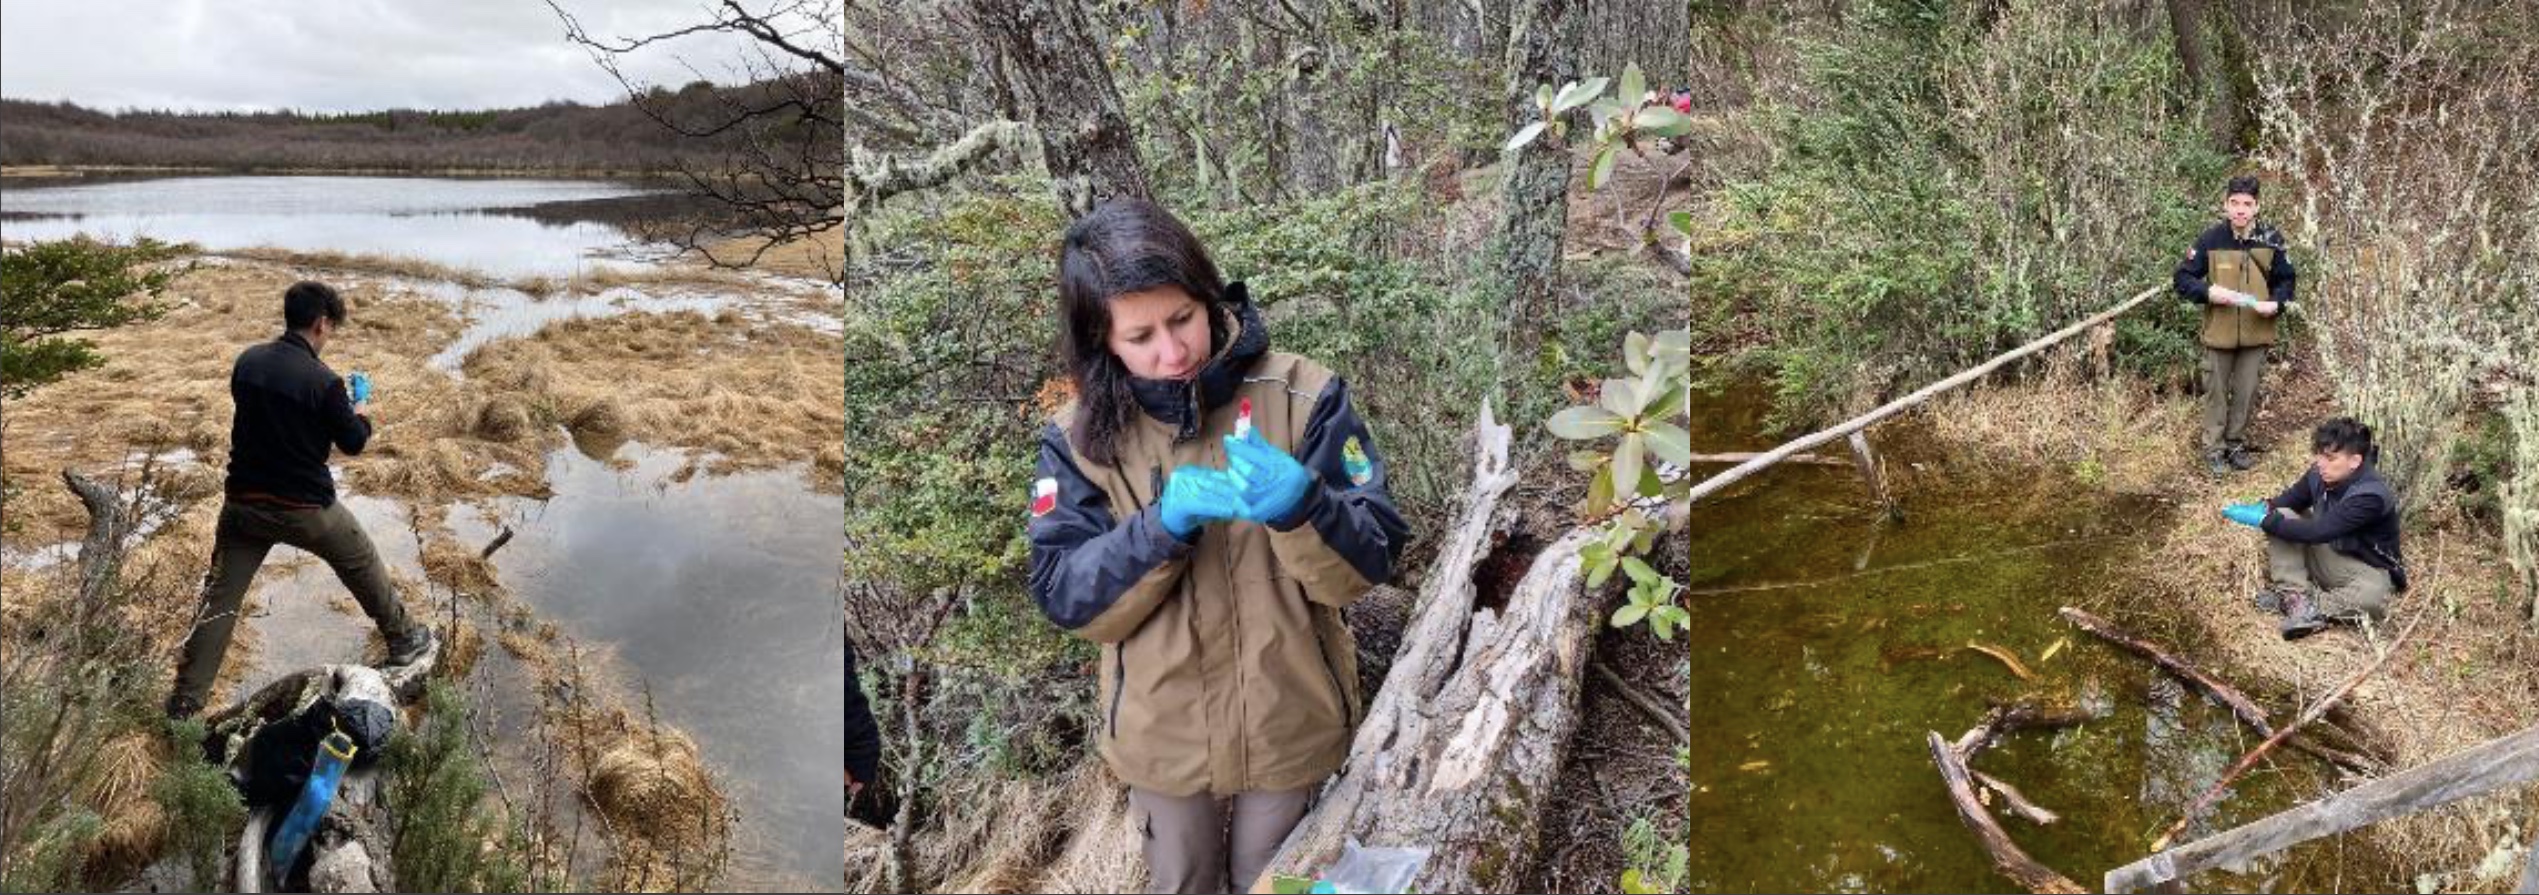 Primeros análisis de ADN ambiental desde Áreas Silvestres Protegidas de Aysén permitieron constatar presencia de especies exóticas invasoras